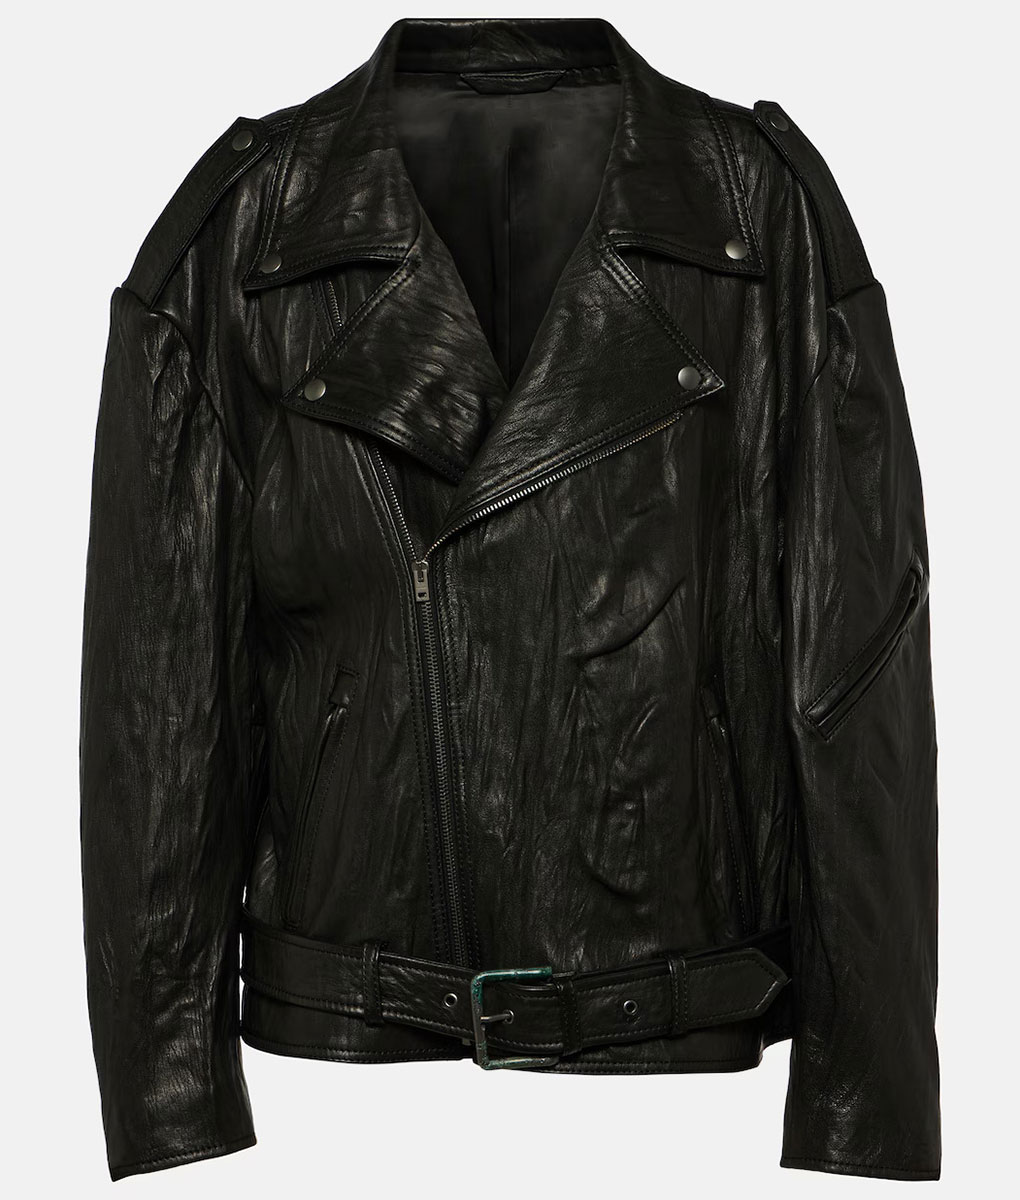 Megan Fox Coachella Black Leather Jacket (4)